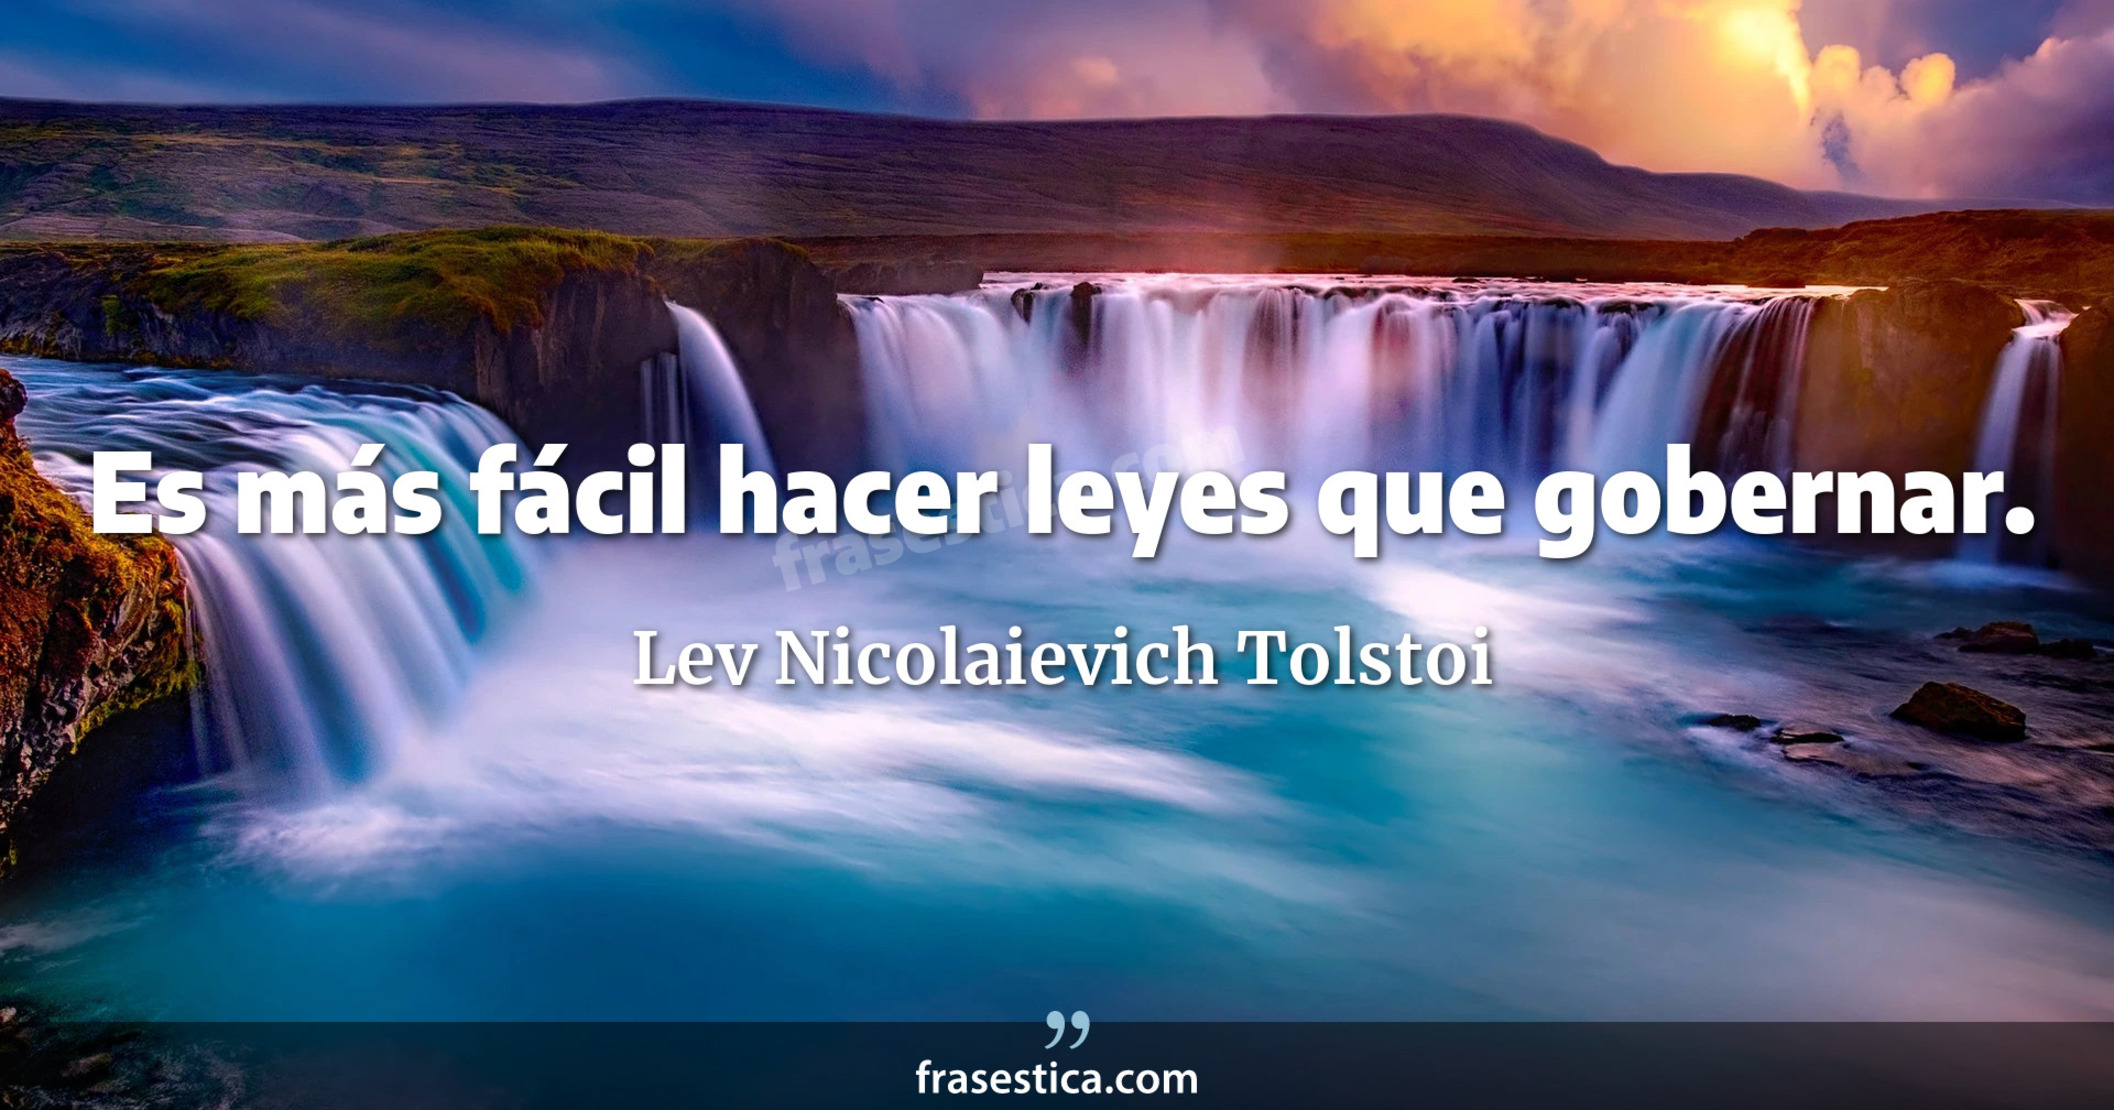 Es más fácil hacer leyes que gobernar. - Lev Nicolaievich Tolstoi